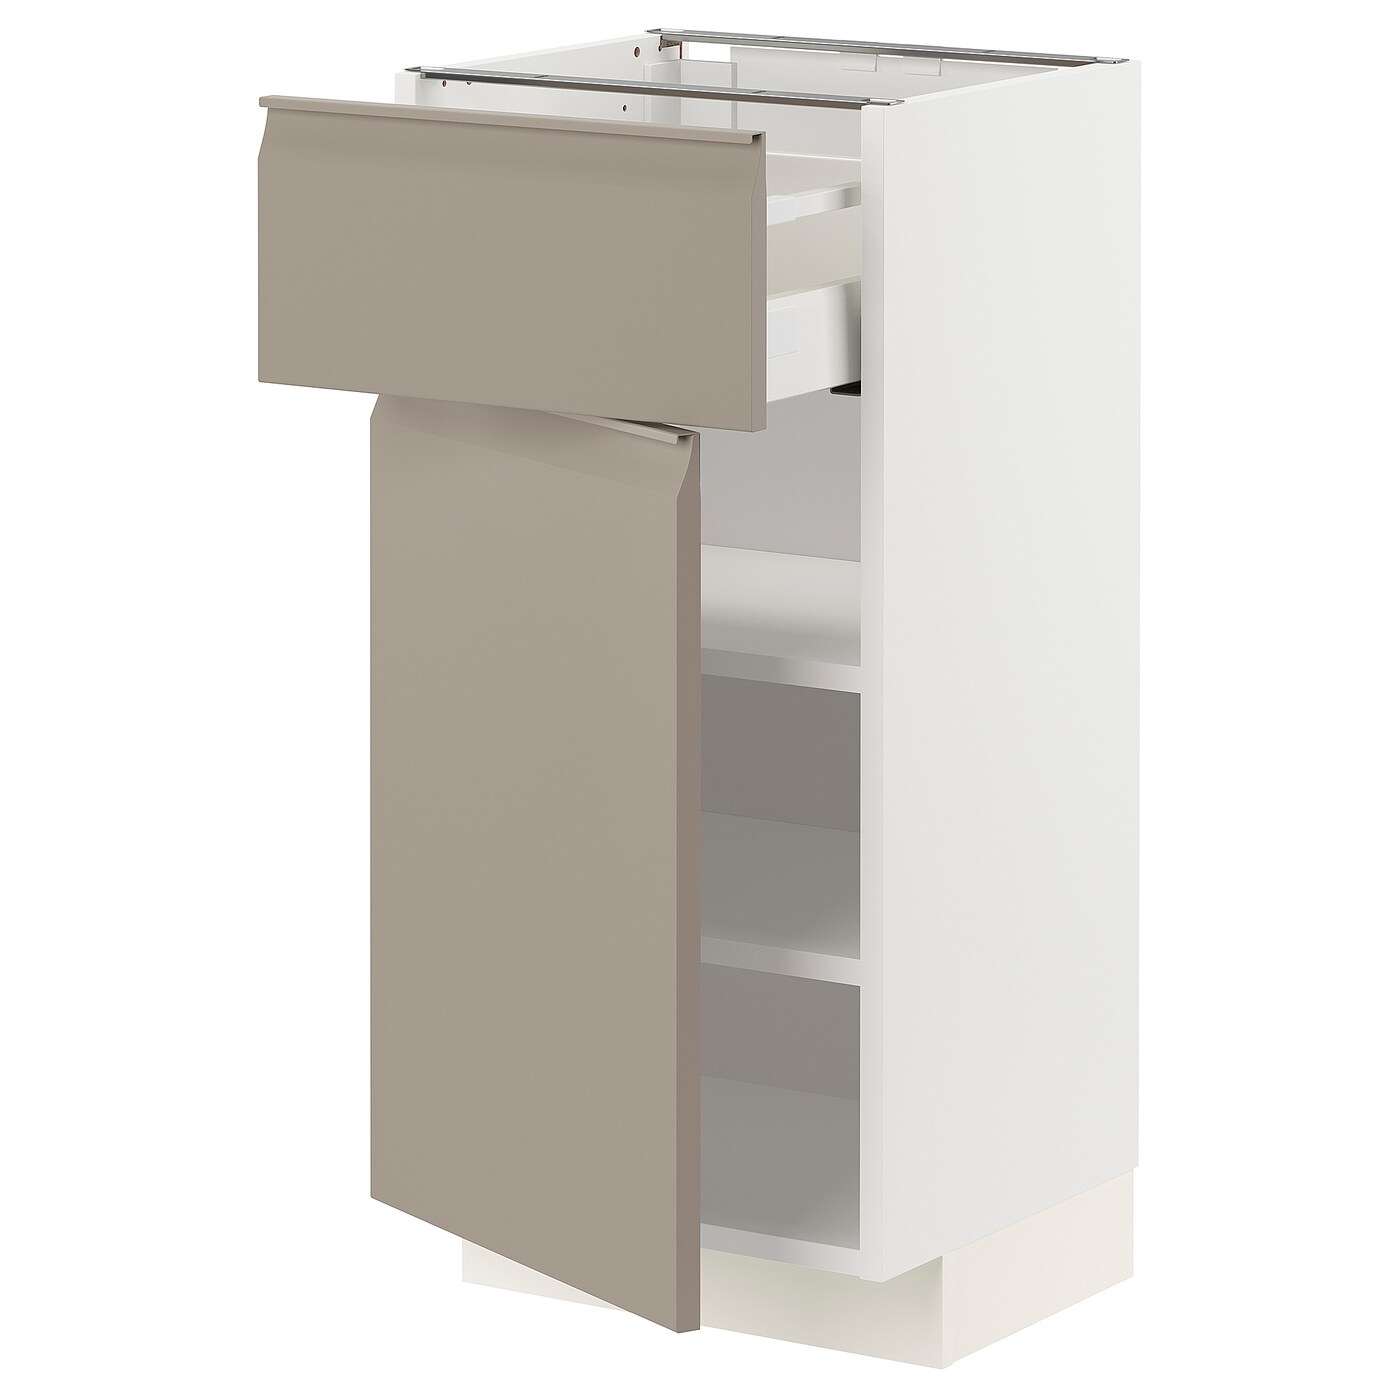 Напольный кухонный шкаф  - IKEA METOD MAXIMERA, 88x39x40см, белый/бежевый, МЕТОД МАКСИМЕРА ИКЕА